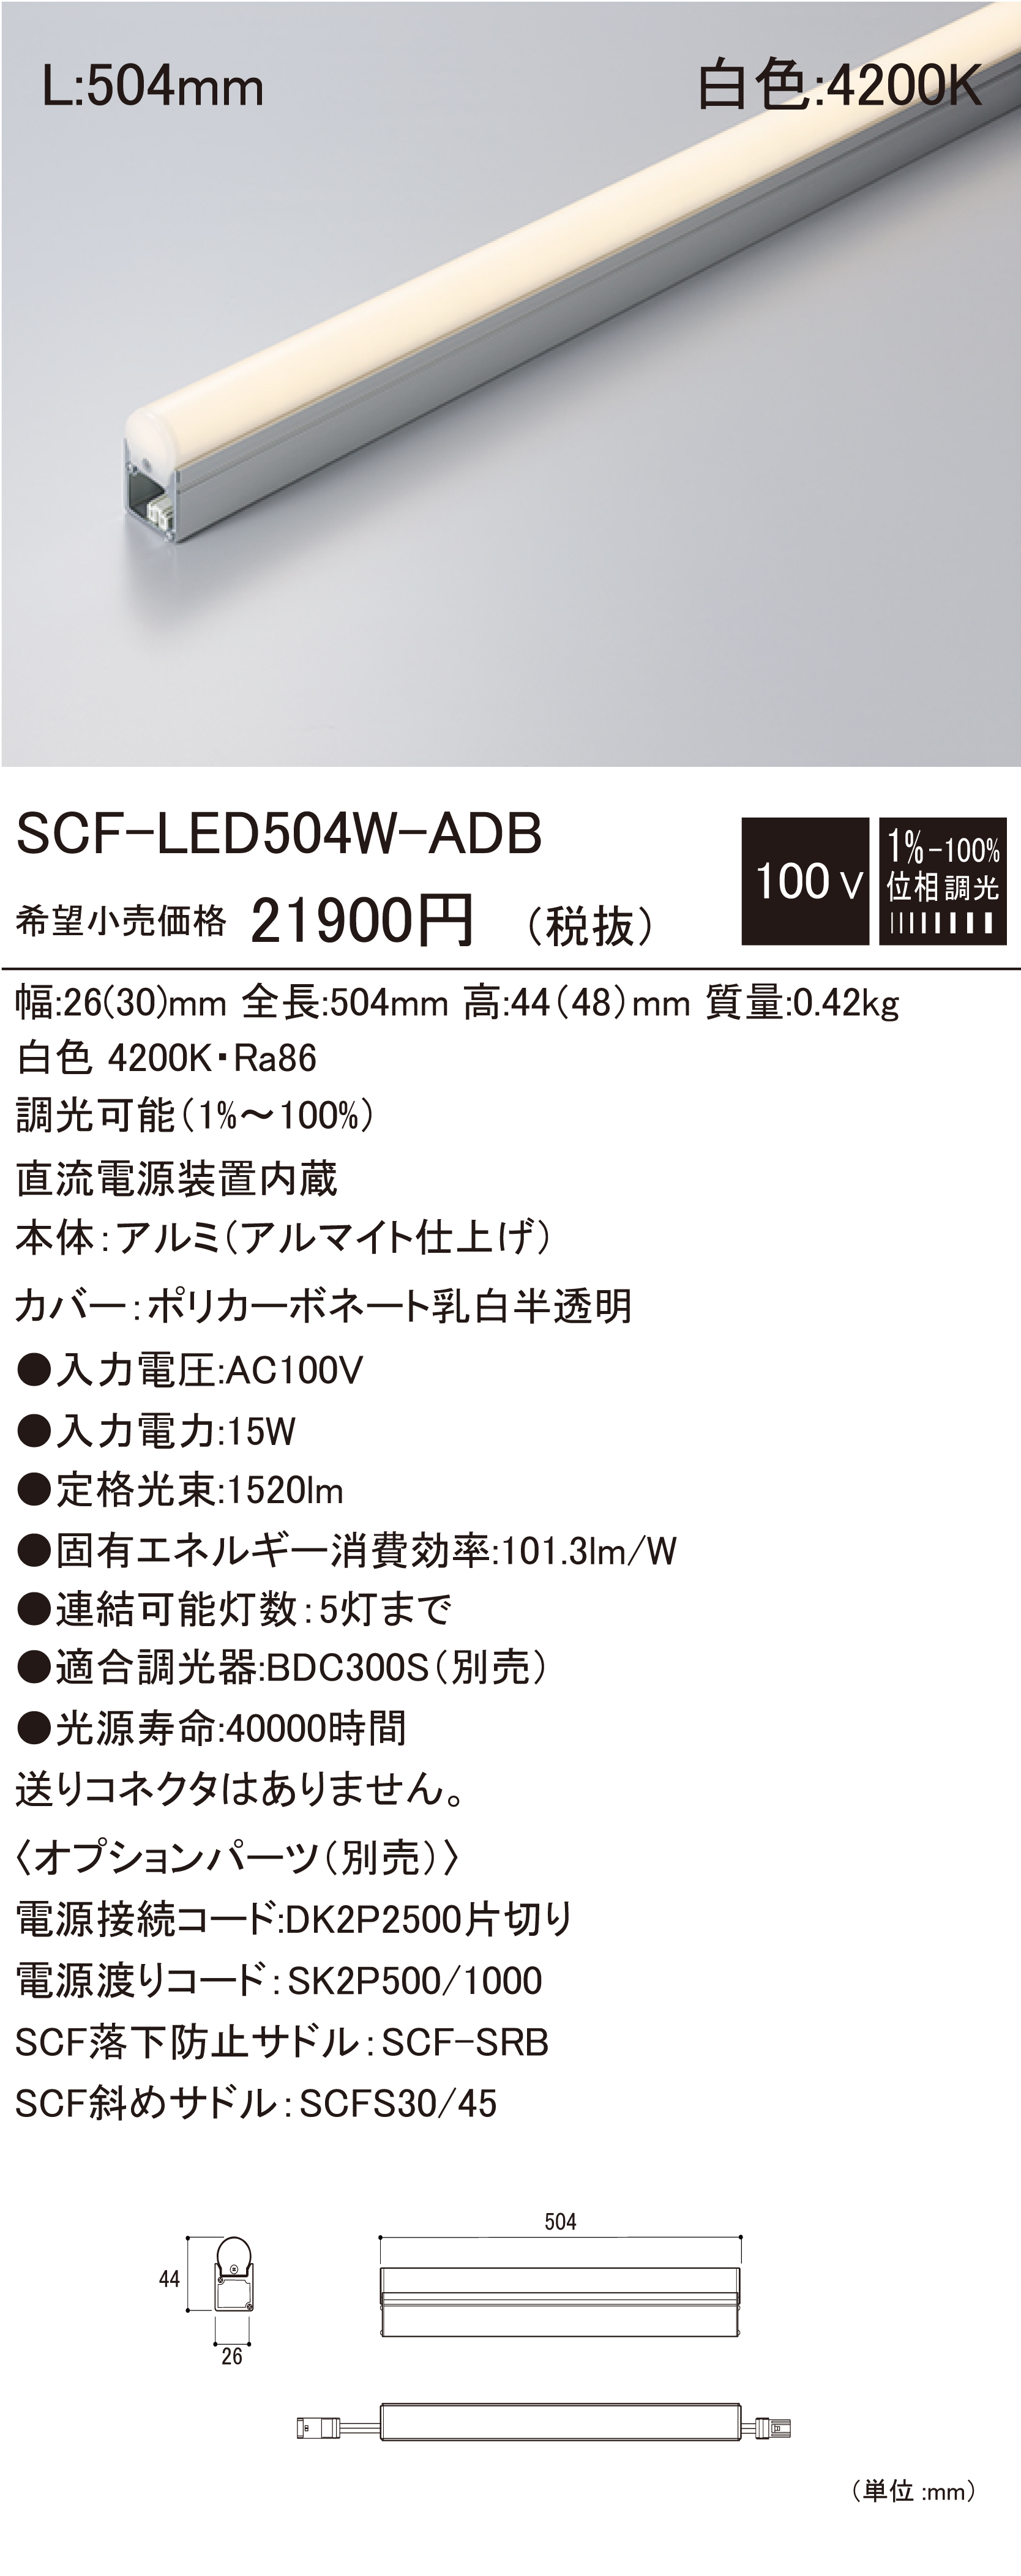 SCF-LED-ADB 建築化照明 ダウンロード | DNライティング株式会社